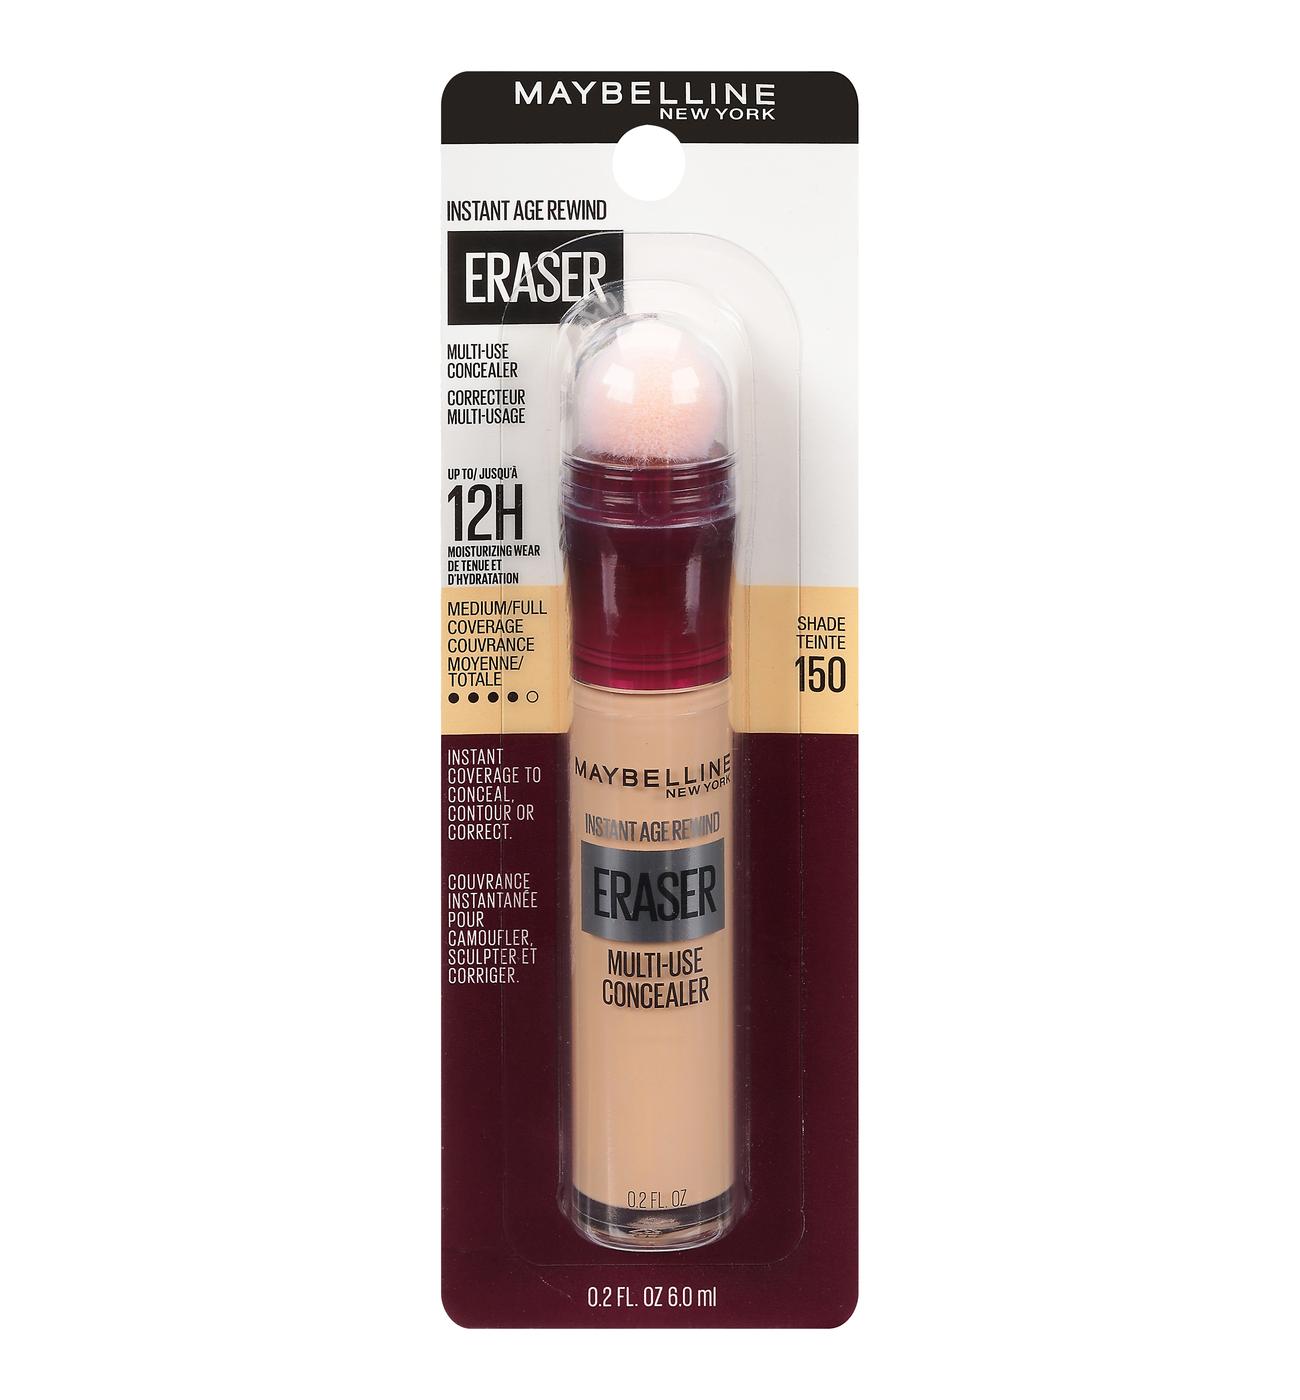 Maybelline Instant Age Rewind Eraser Concealer - 150 - Shop Concealer & Color Corrector at H-E-B